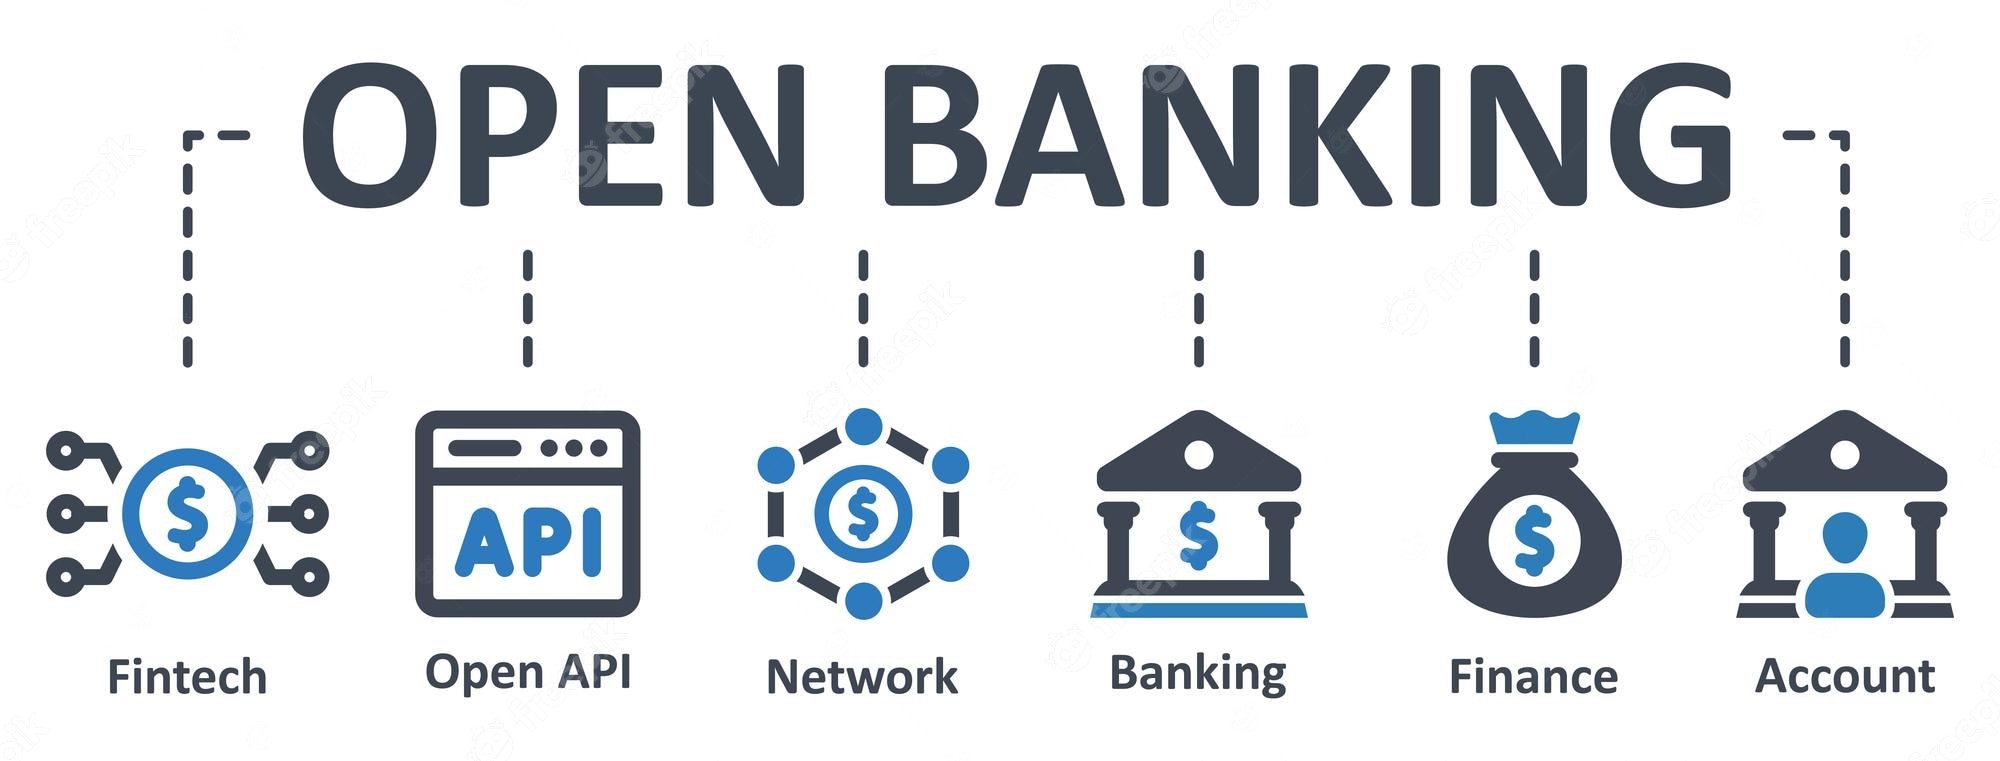 Open Banking model